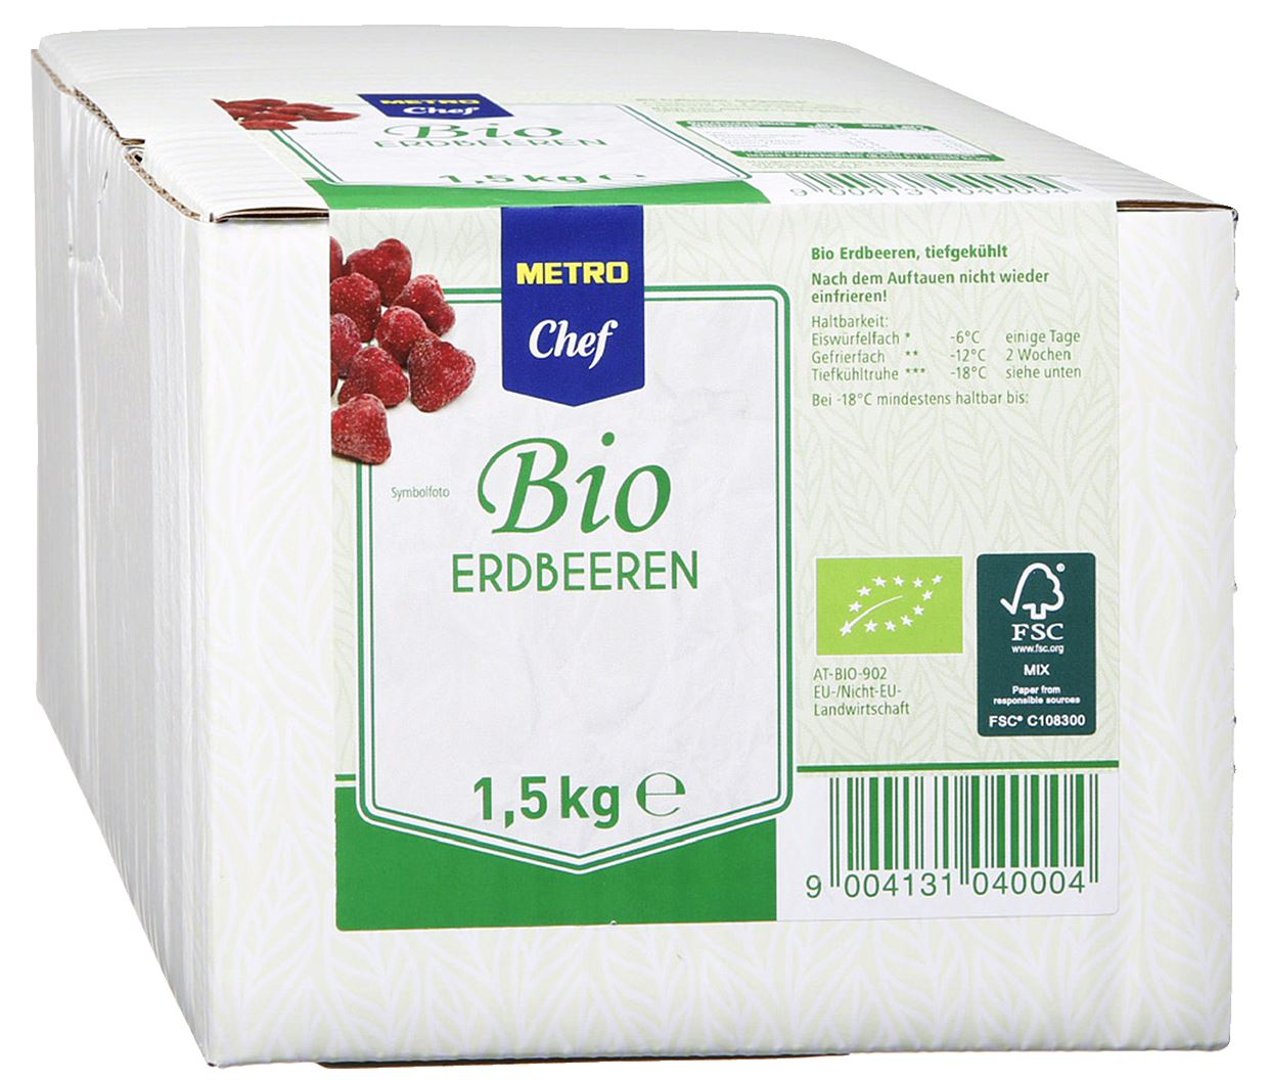 METRO Chef Bio - Erdbeeren tiefgefroren - 1,5 kg Packung